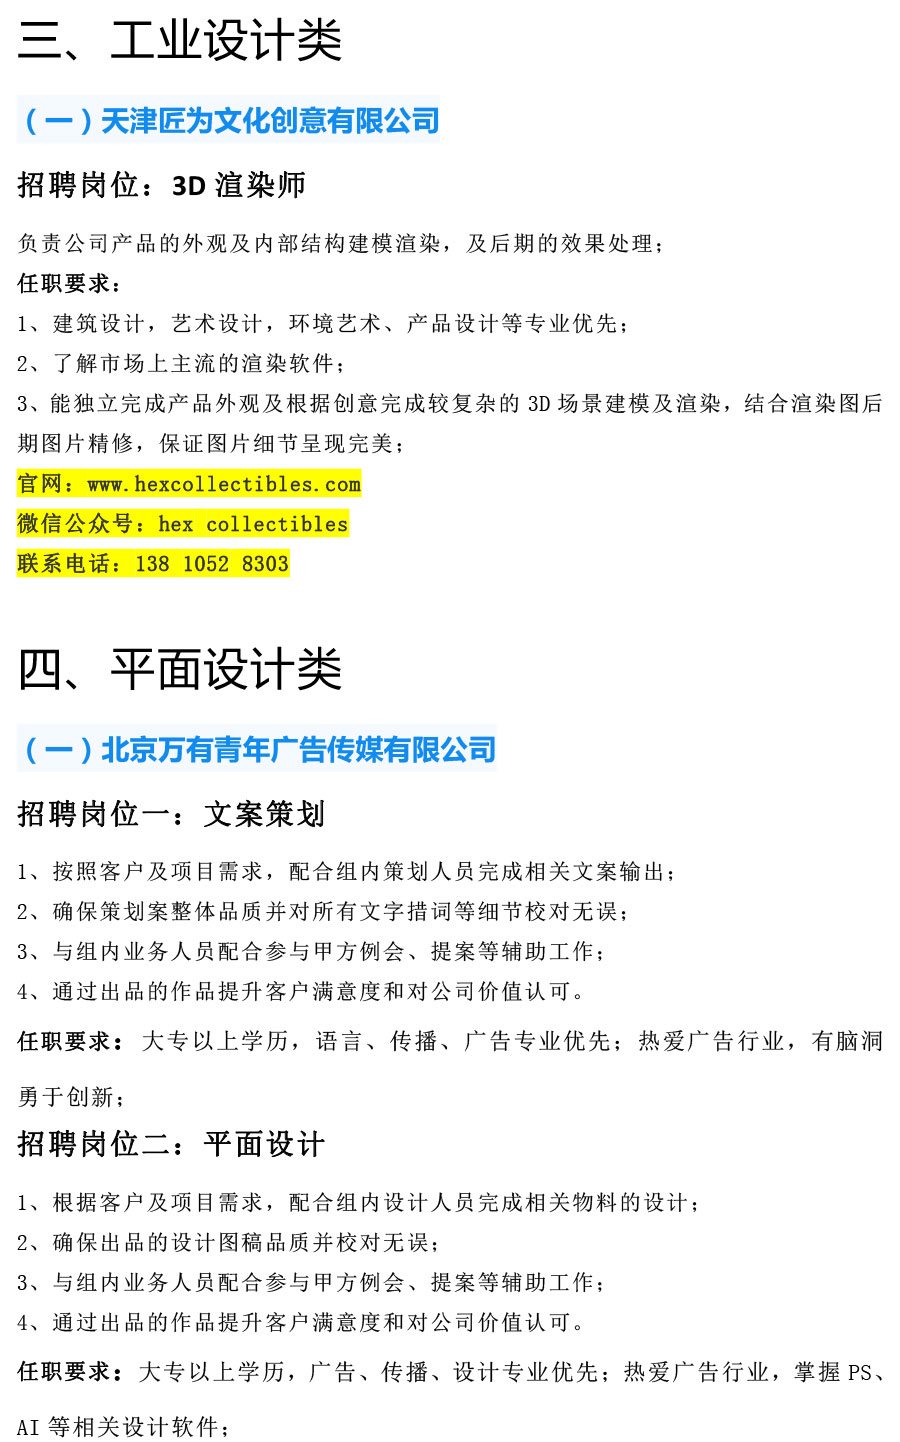 天津工艺美术职业学院2021年12月招聘信息-5.jpg